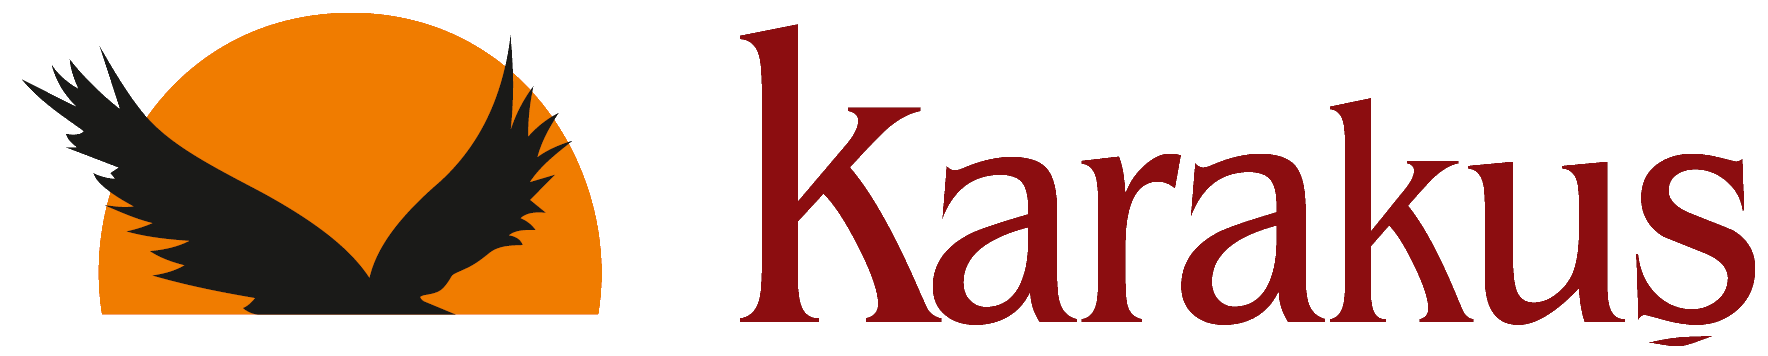 Karakus_Yeni_Logo.png